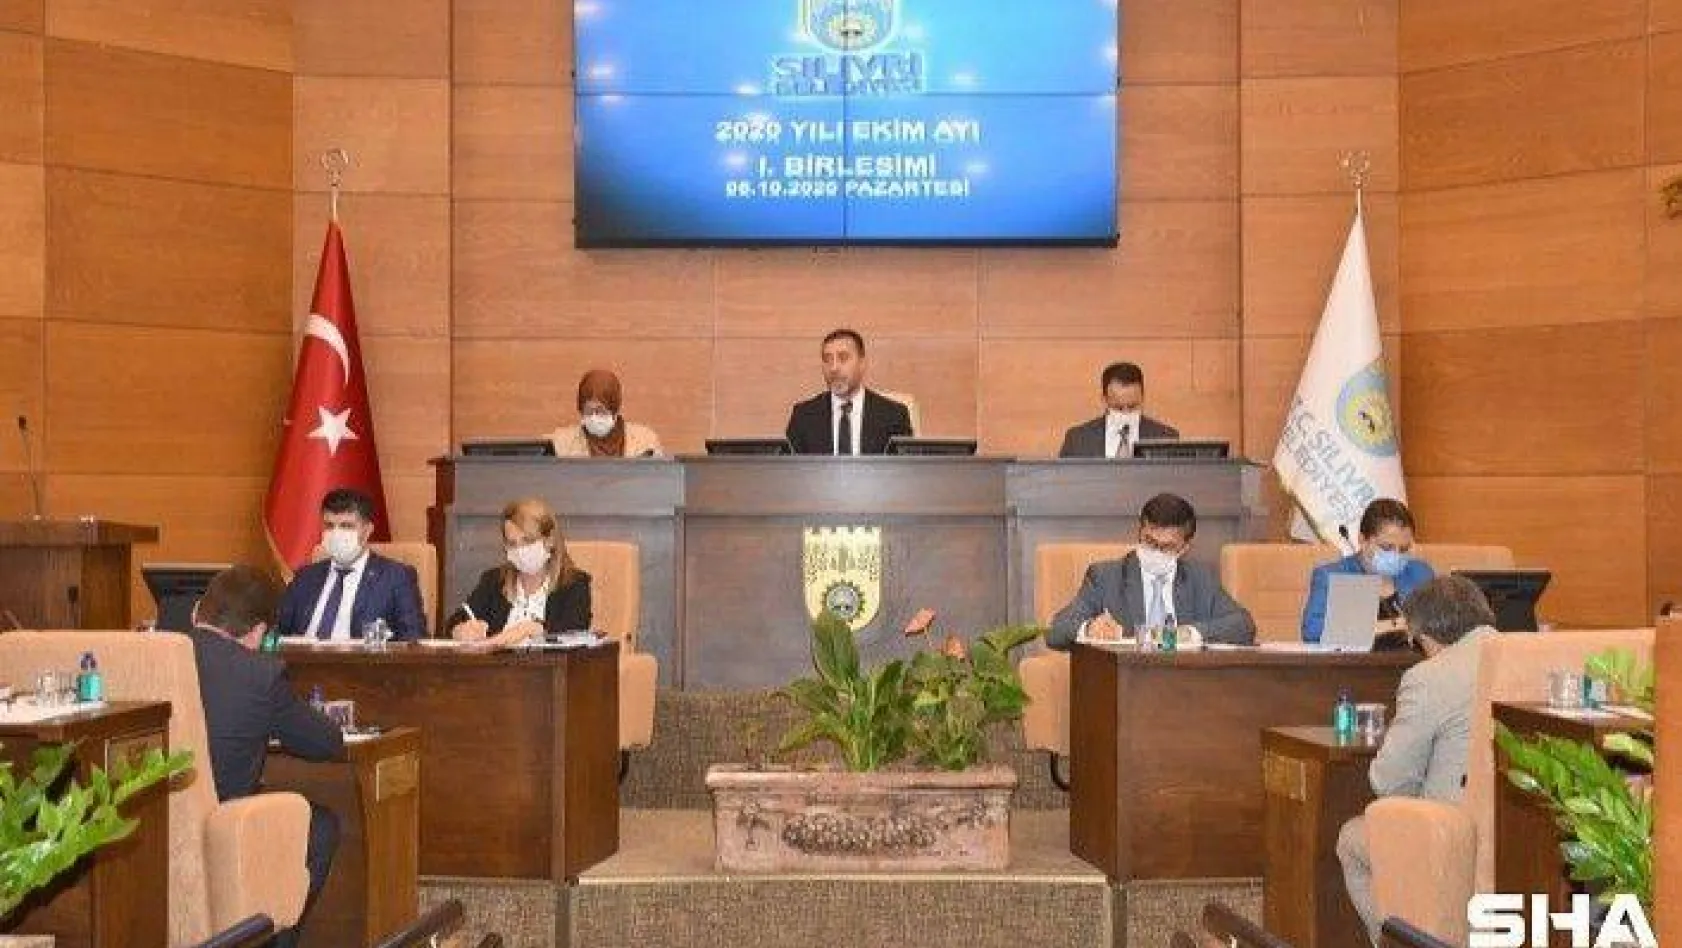 Silivri Belediye Meclisinden Azerbaycan'a Destek Bildirisi